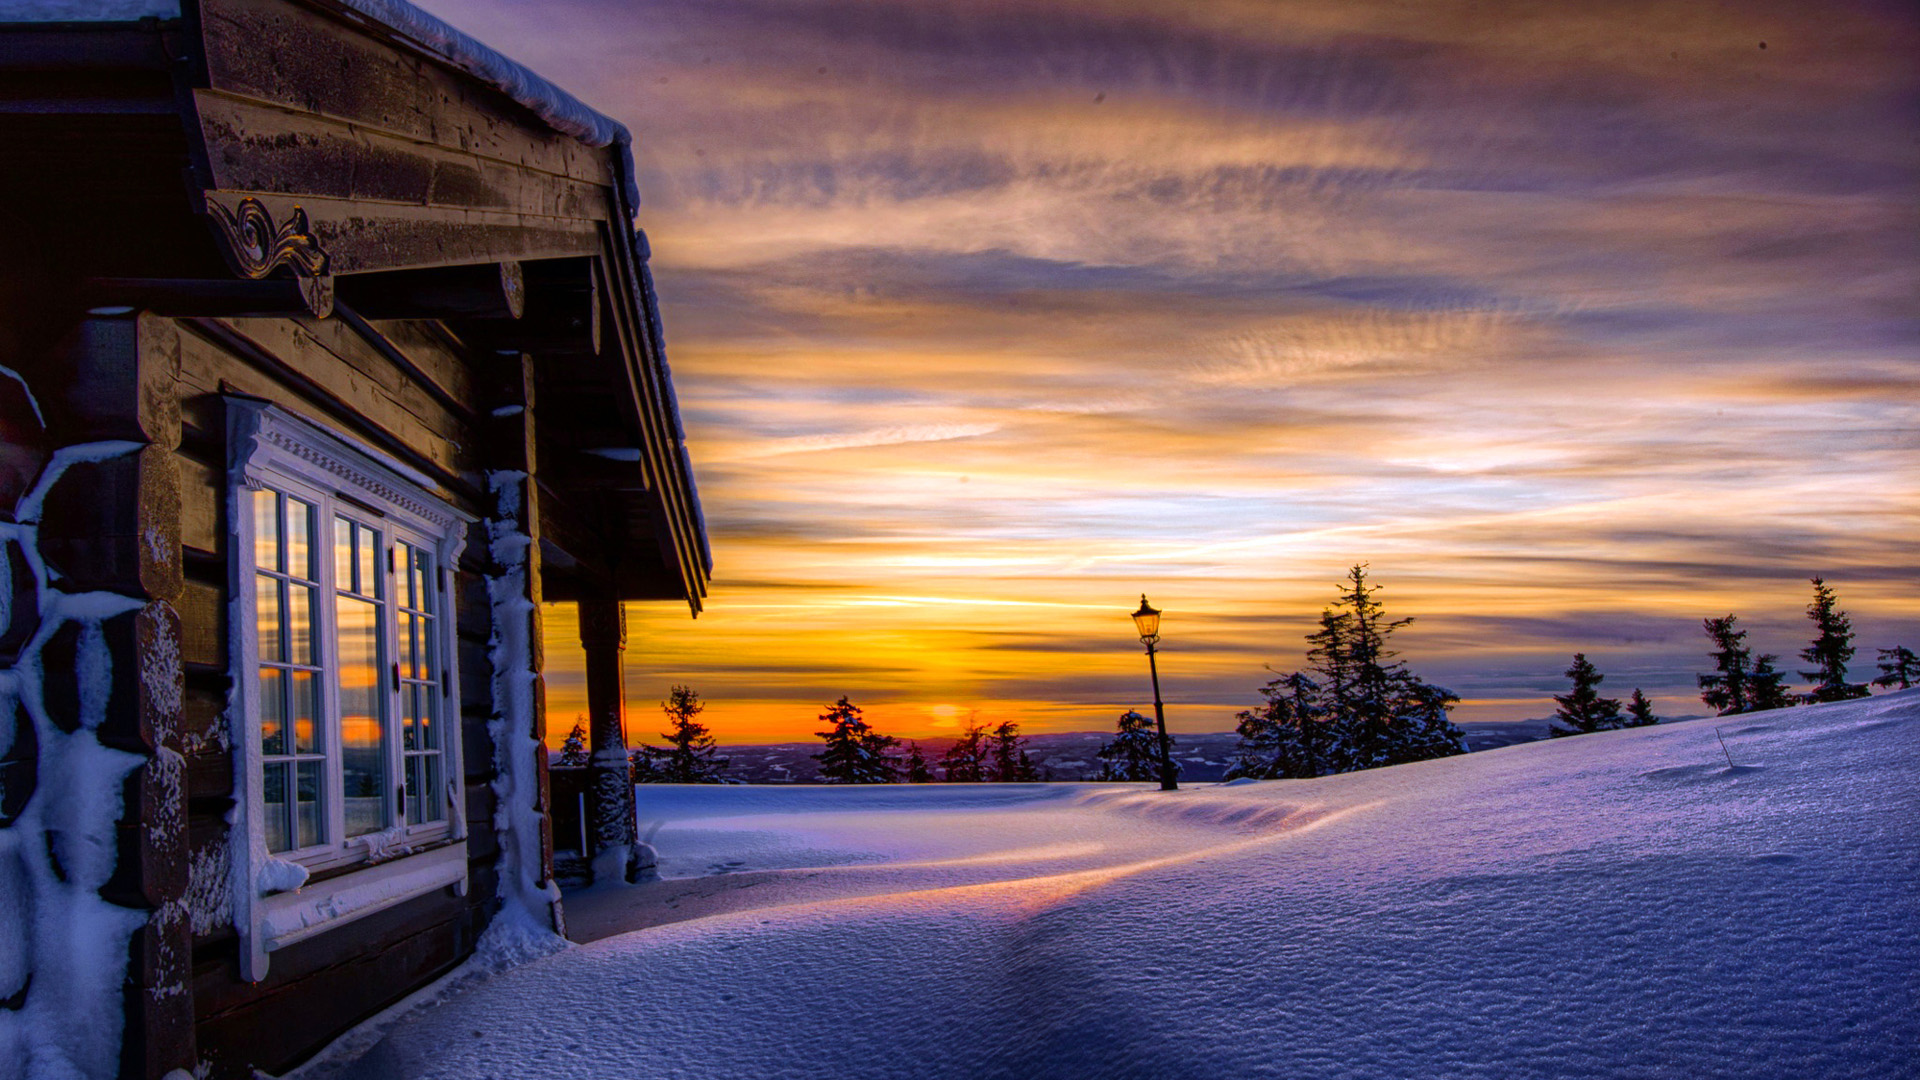 冬天,雪,雪堆,房子,树,天空,风景桌面壁纸